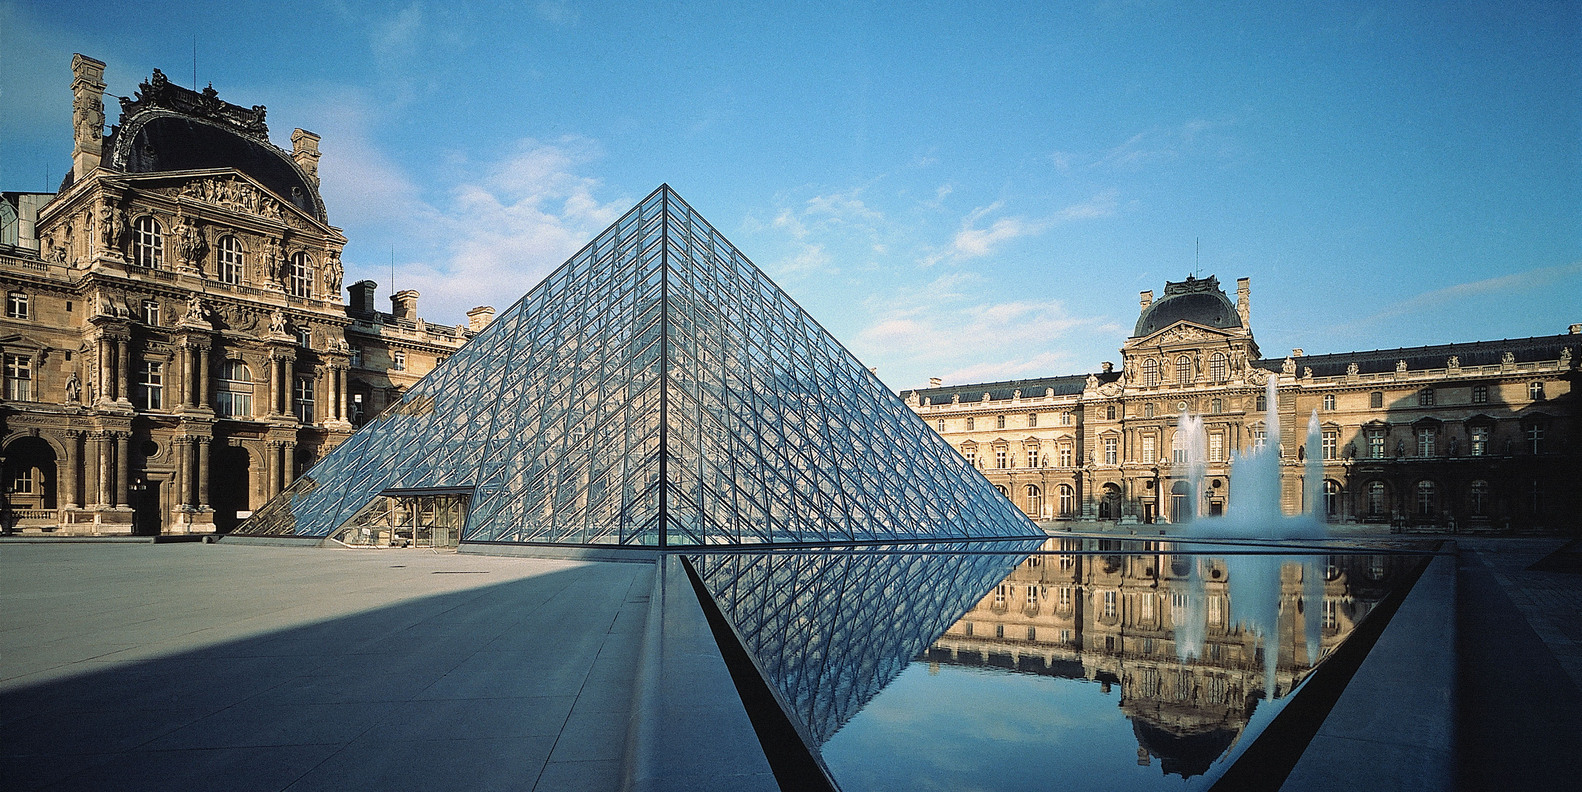 Khám phá bảo tàng Louvre nổi tiếng nhất thế giới tại Pháp